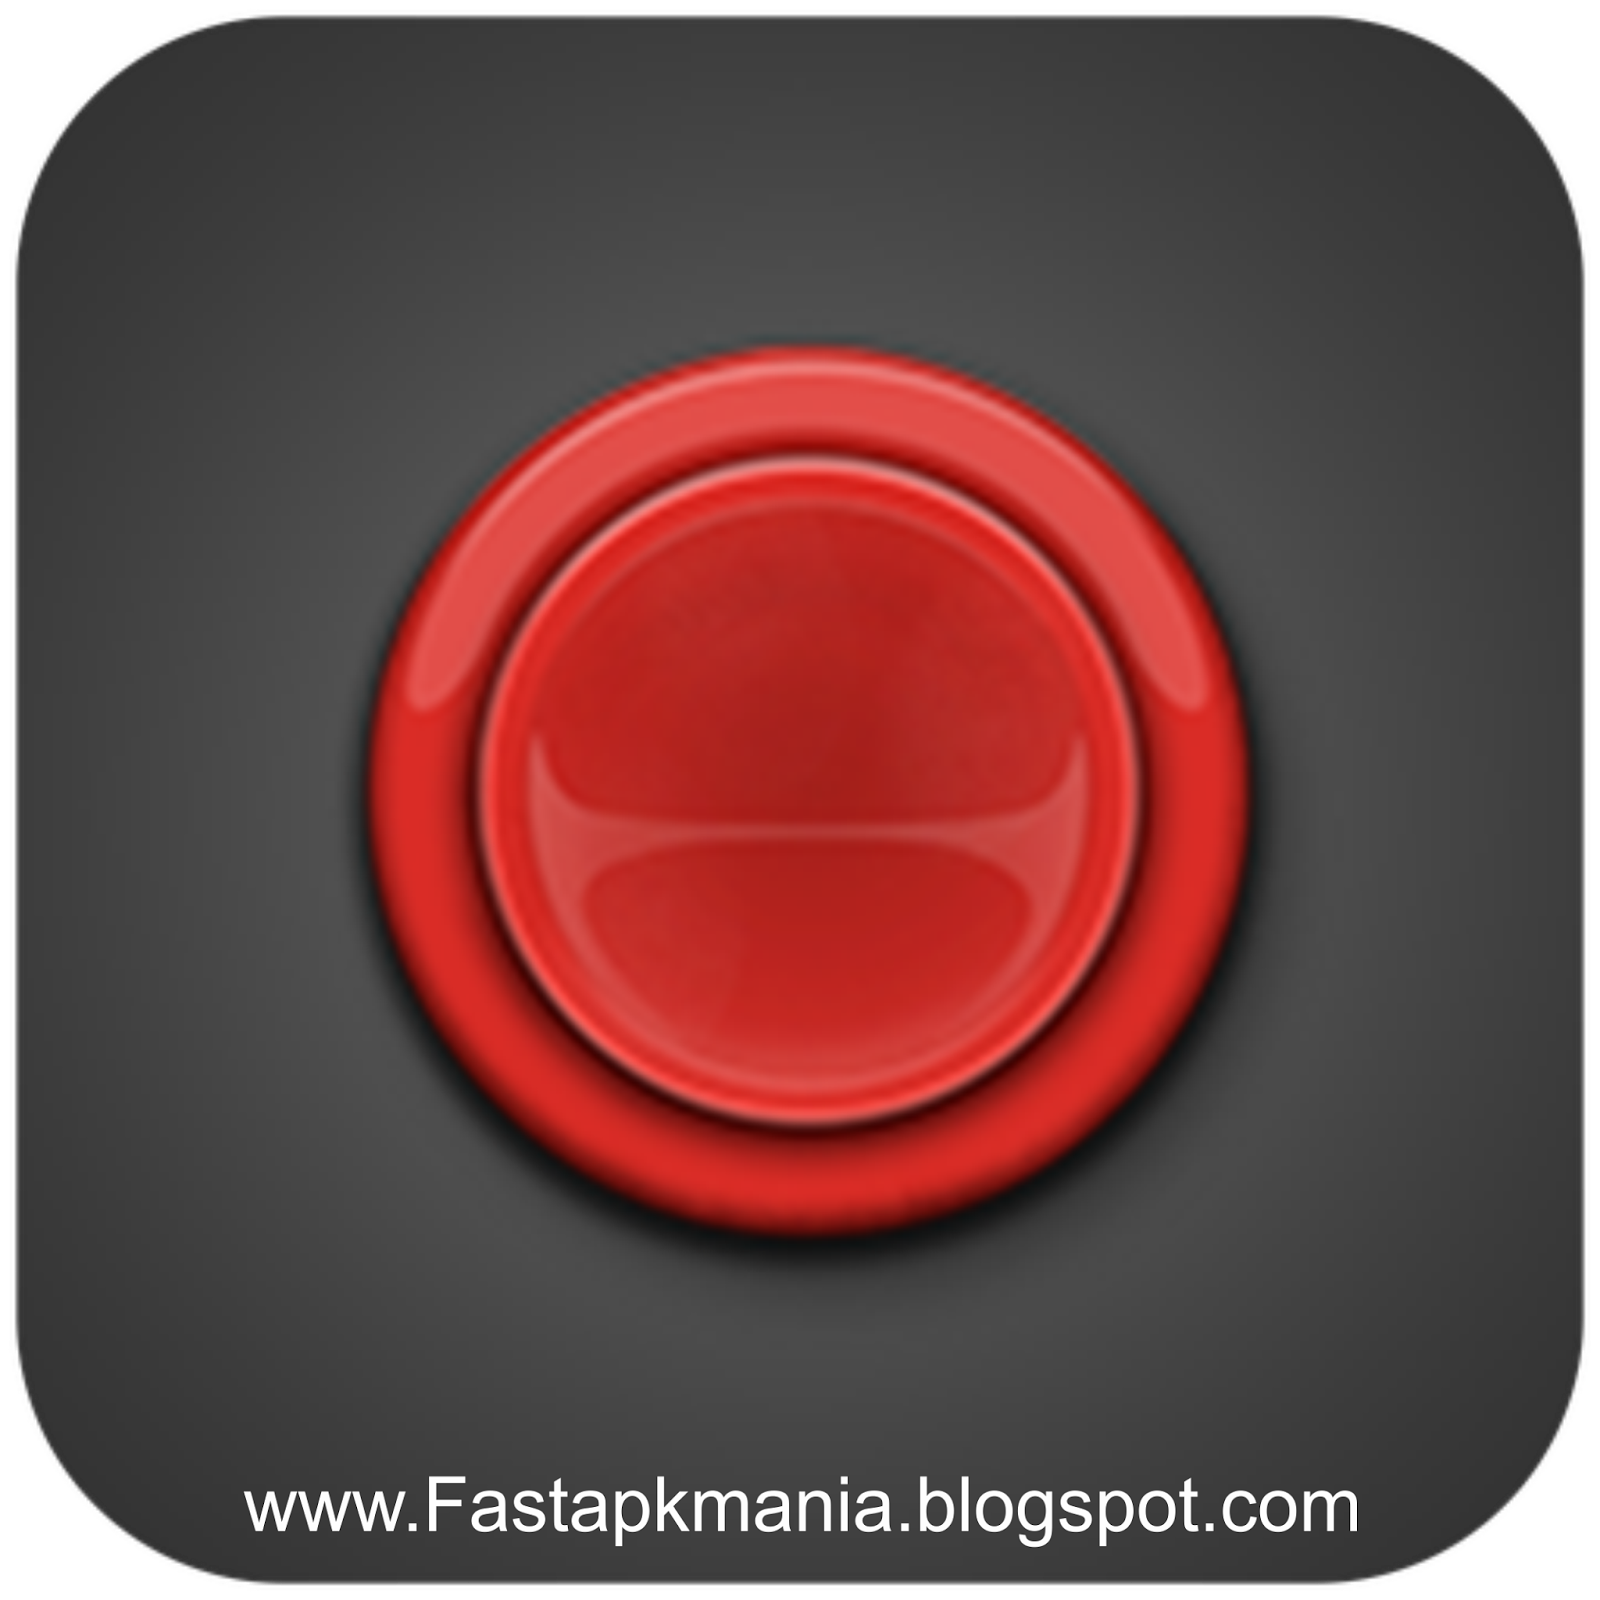 Красная кнопка игра. Bored button - игры. Save красная кнопка для игры. Press button игра.